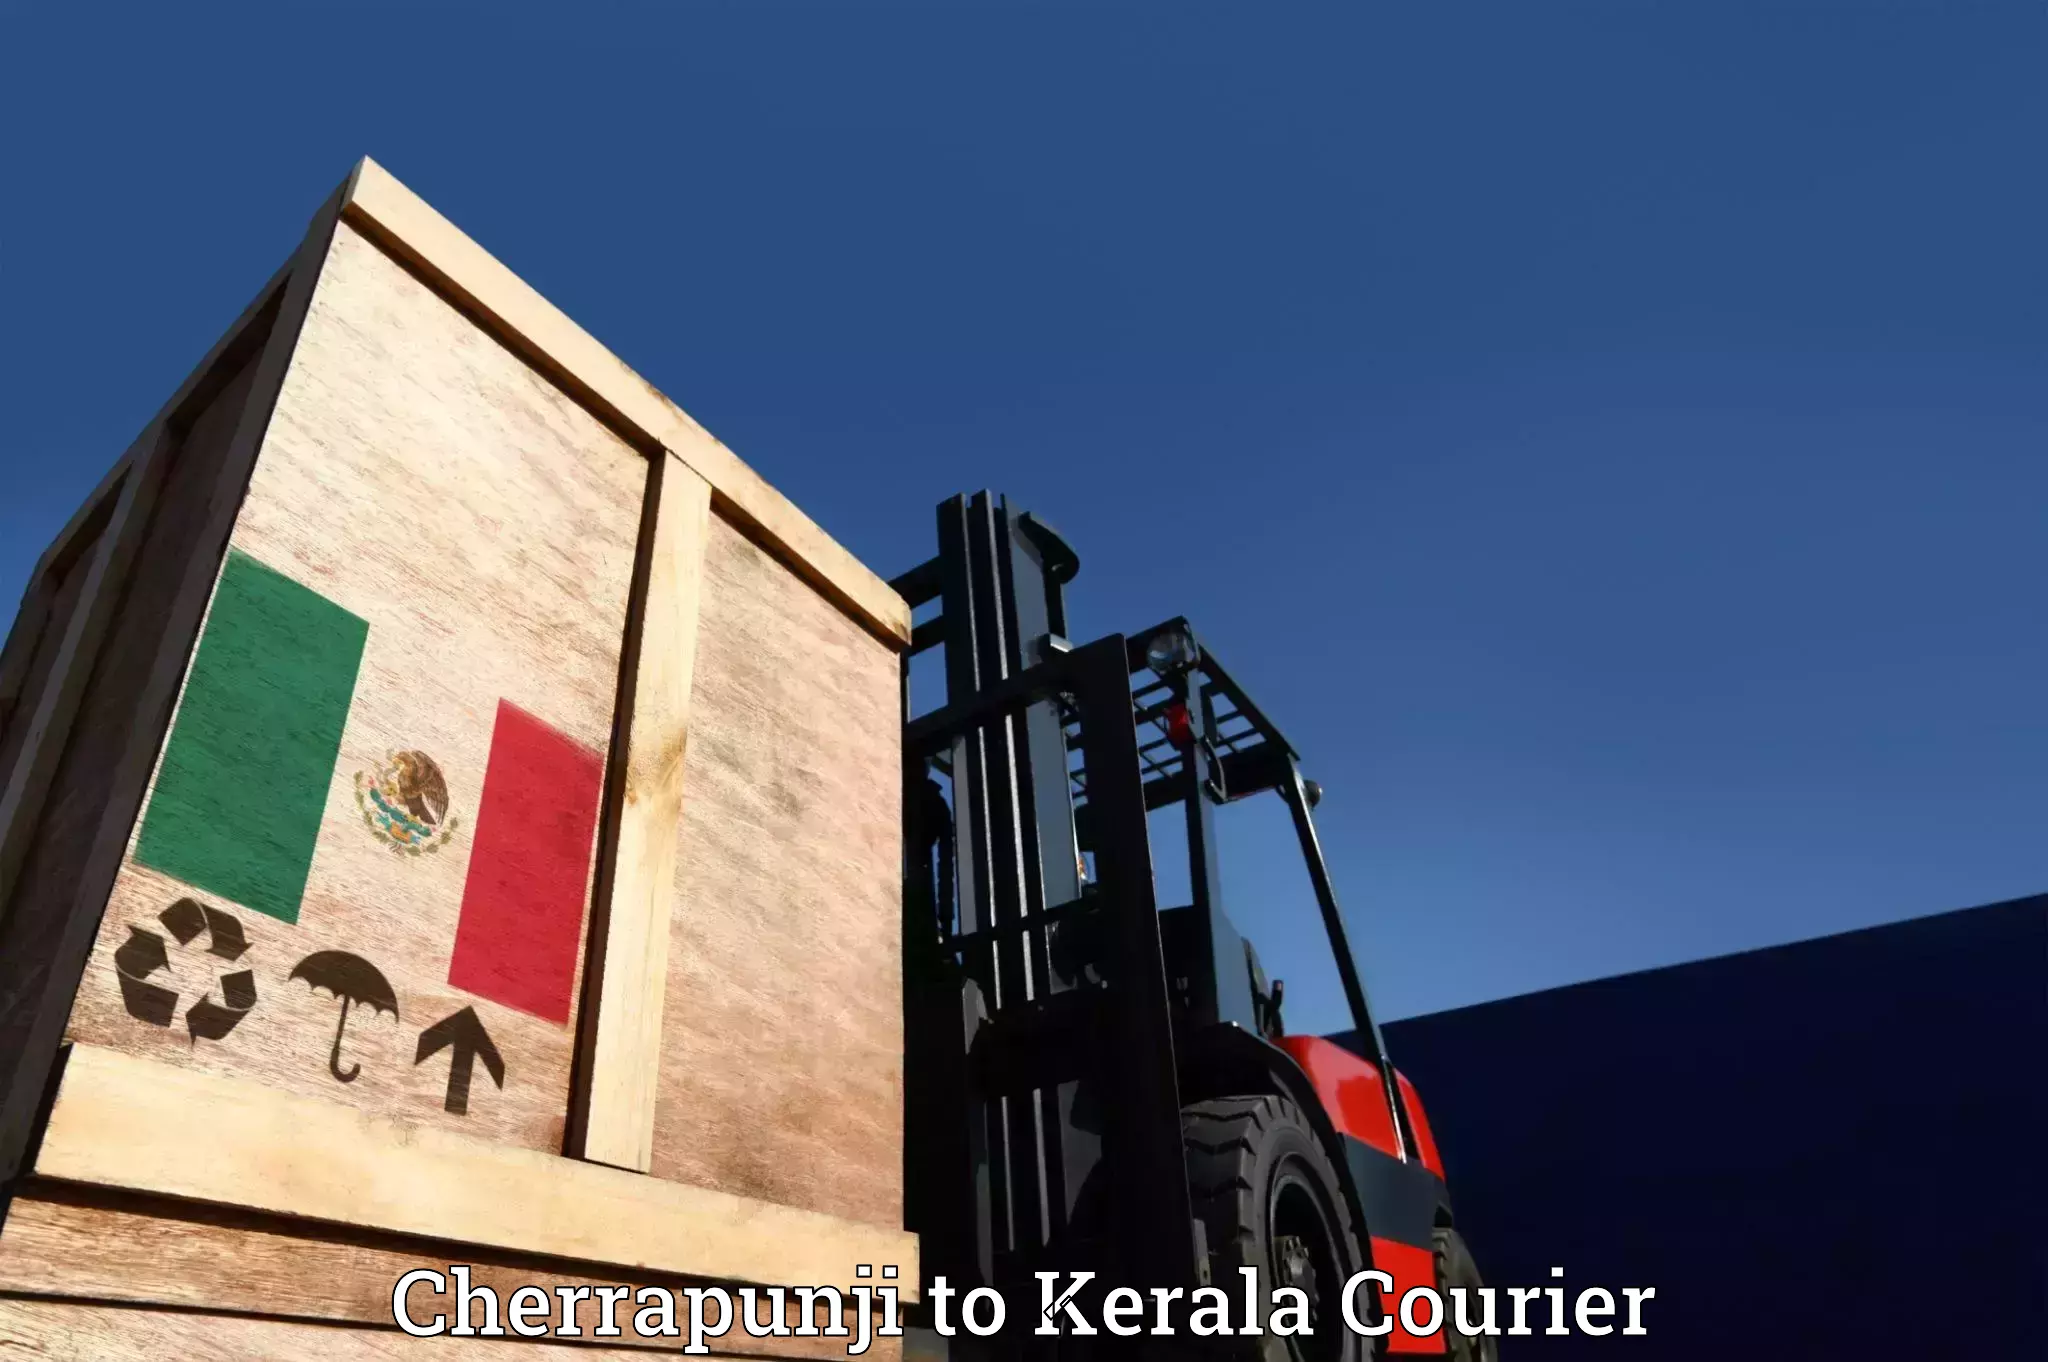 Quality relocation assistance Cherrapunji to Shoranur